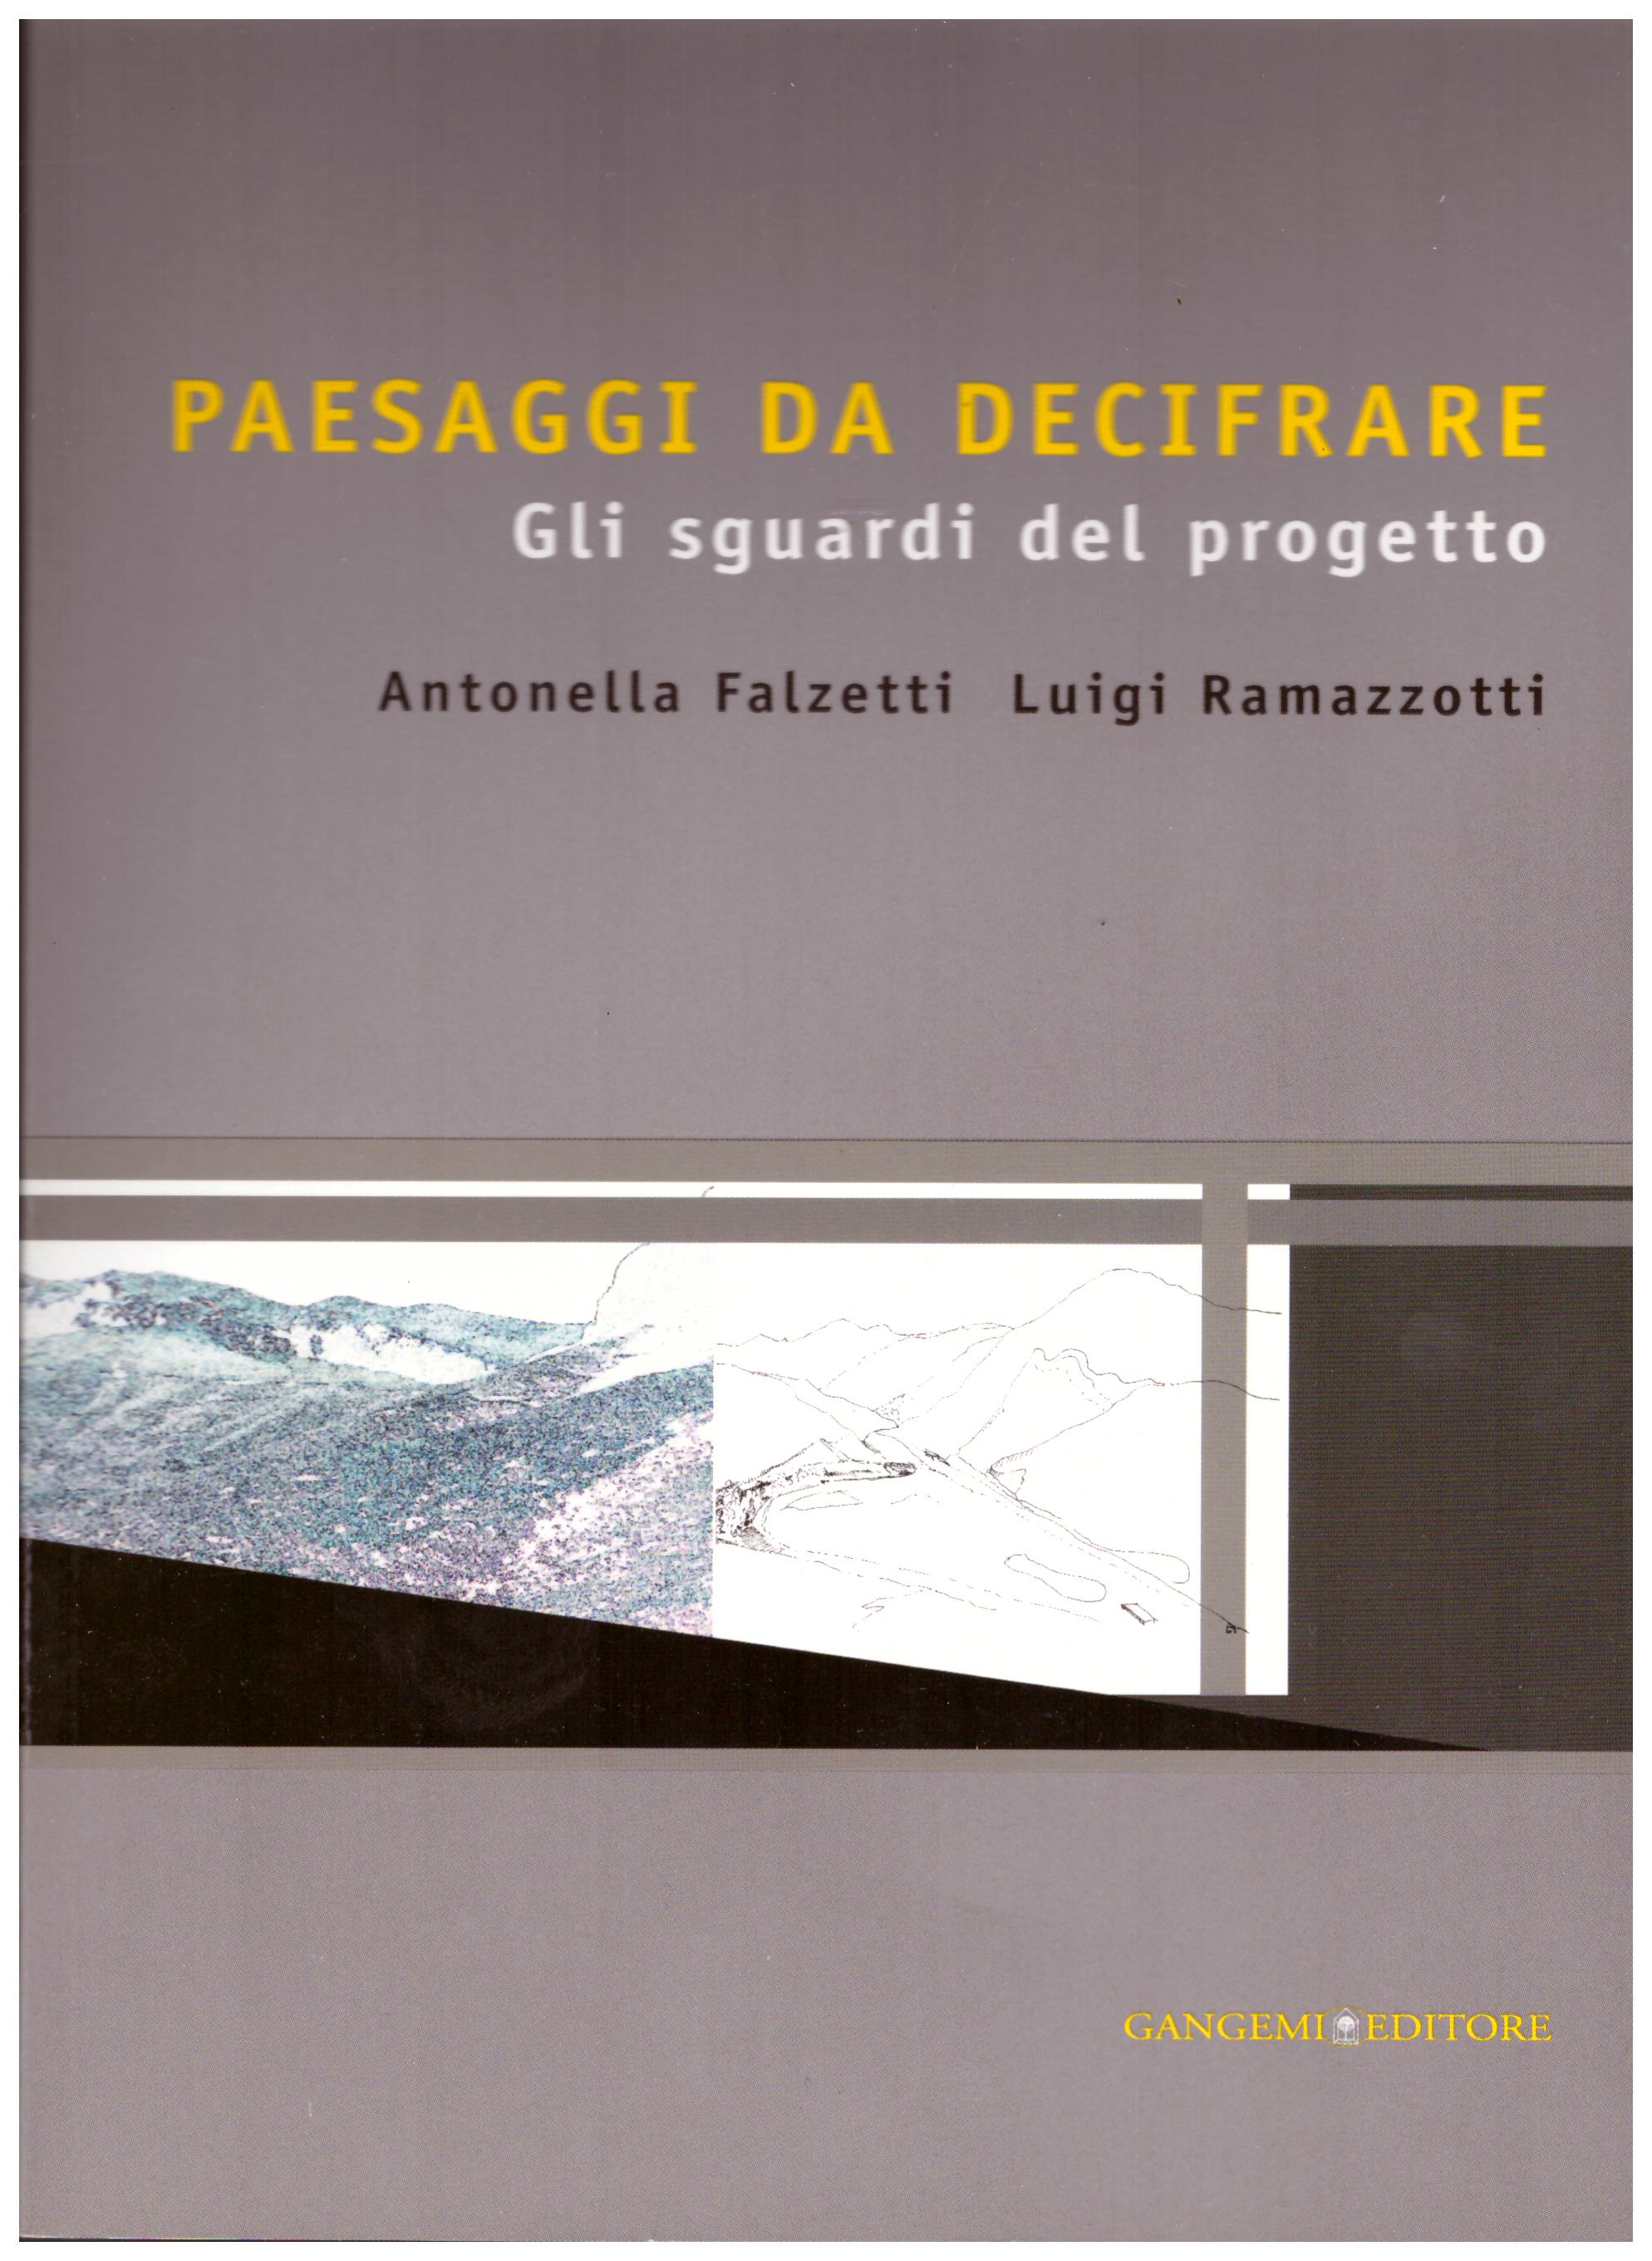 Titolo: Paesaggi da decifrare     Autore: Antonella Falzetti, Luigi Ramazzotti    Editore: Gangemi